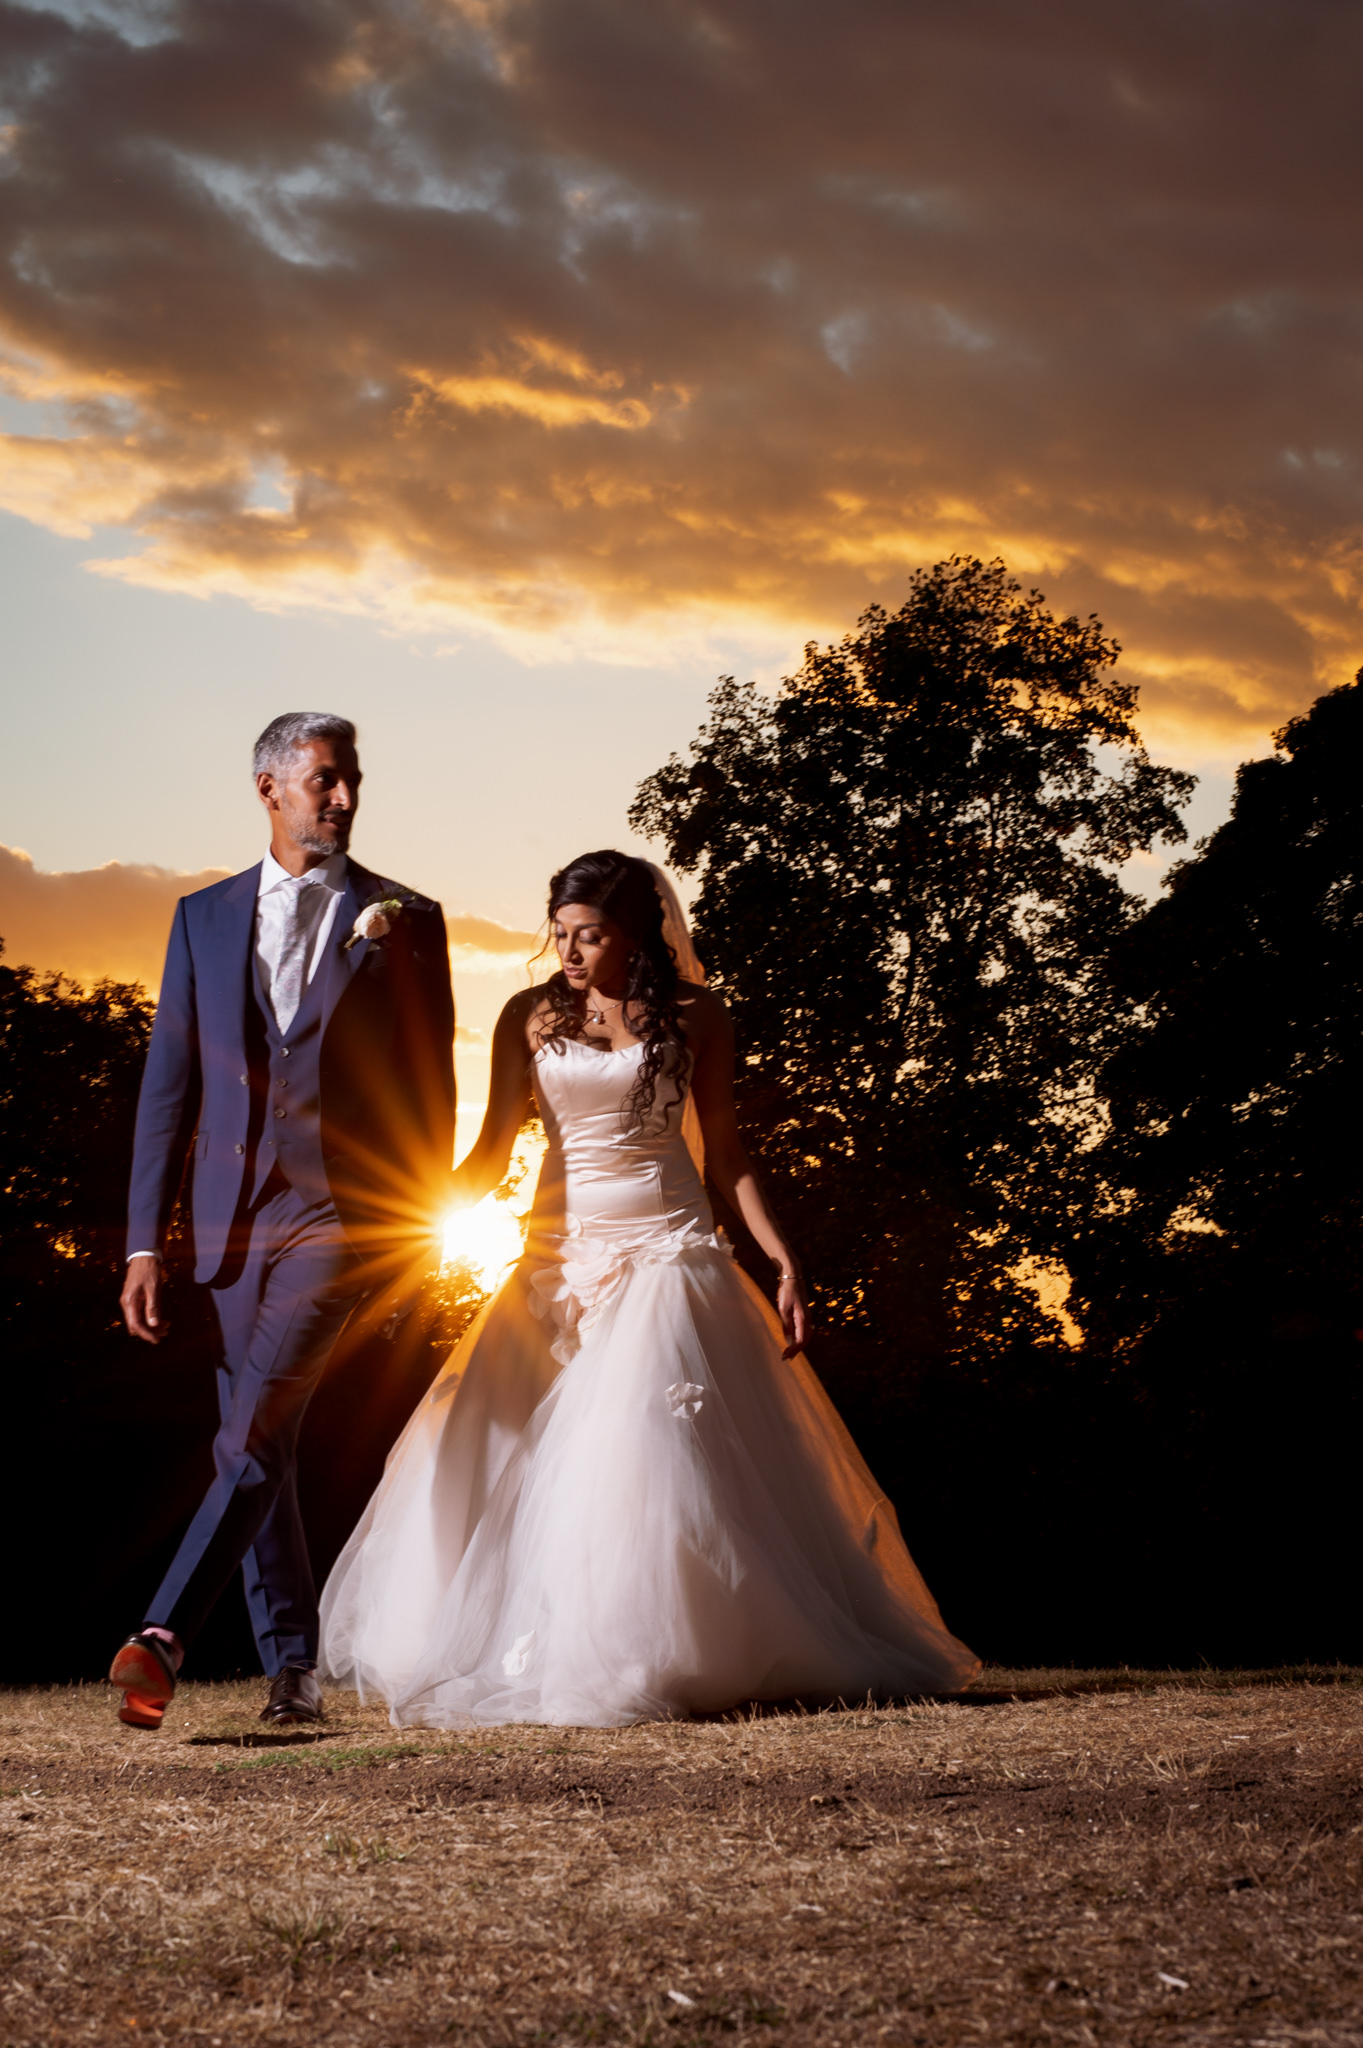 Wedding Photographer Nottingham sunset